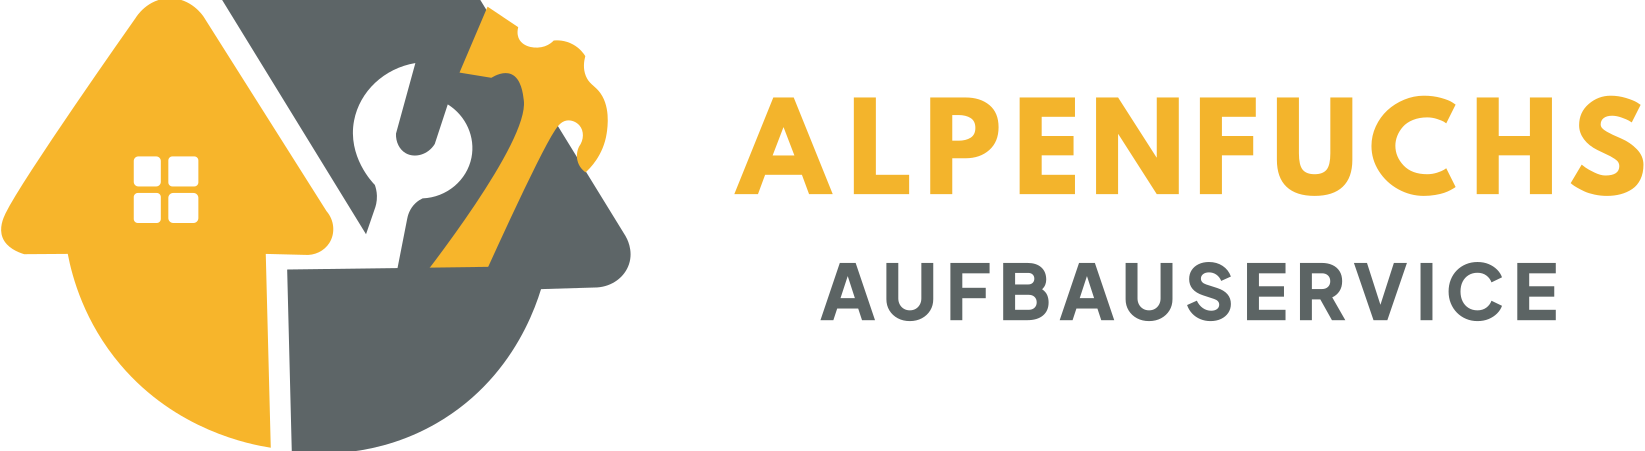 ALPENFUCHS – Aufbauservice & Montageservice